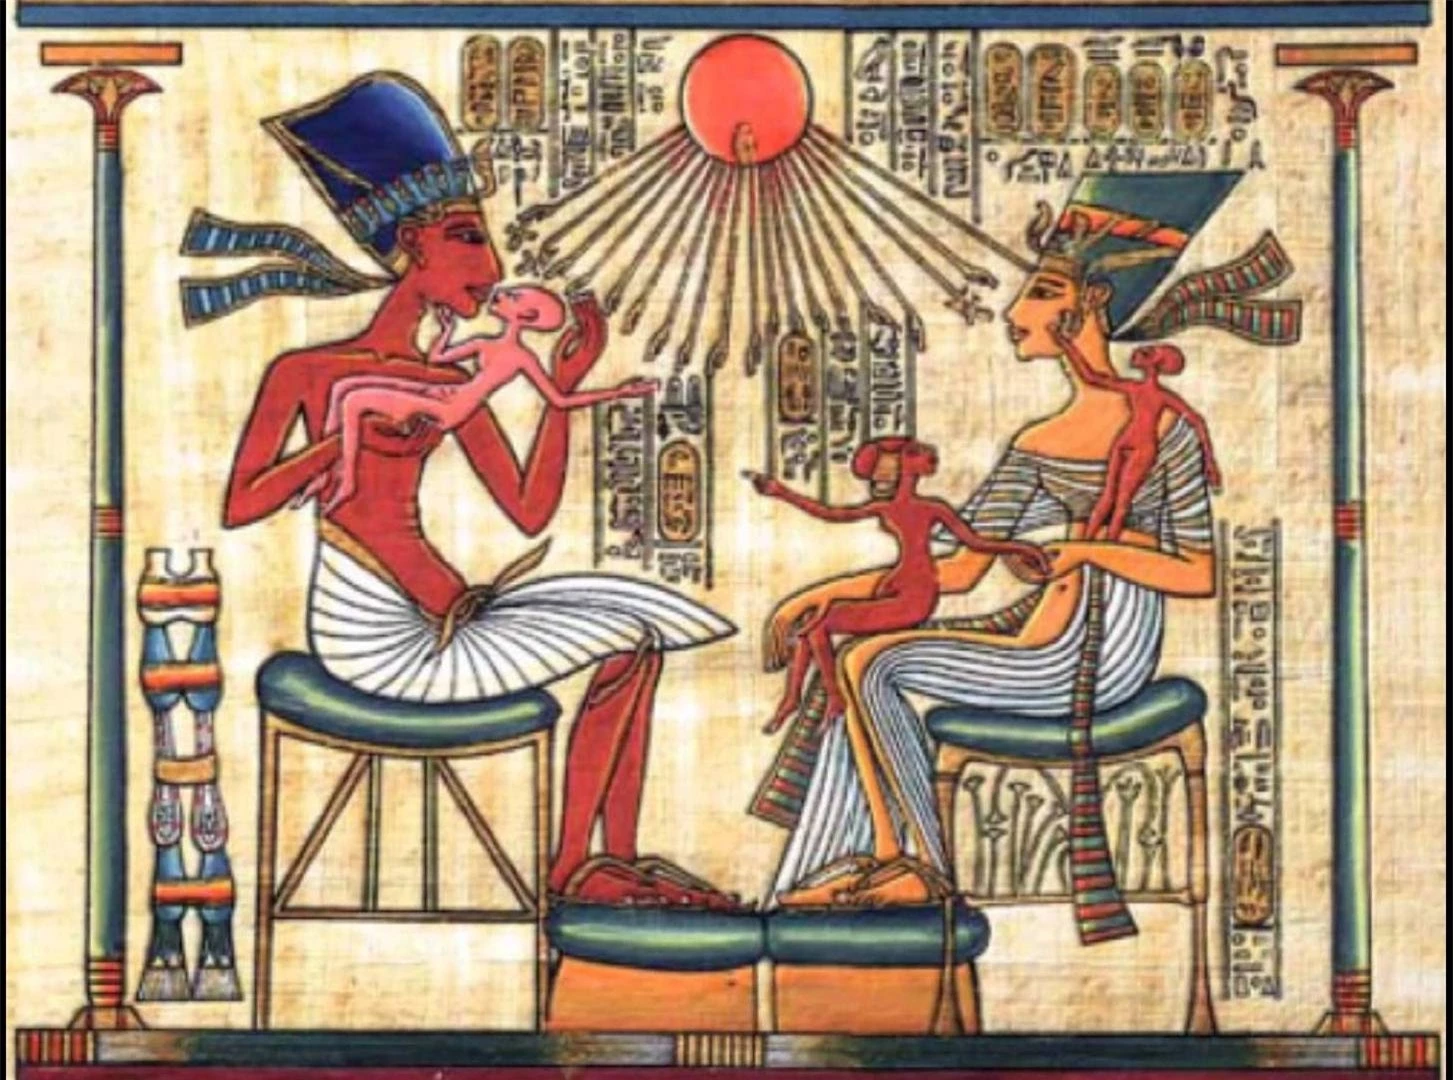  Tranh vẽ pharaoh Akhenaten, Nefertiti và ba con gái dưới ánh sáng của thần mặt trời 